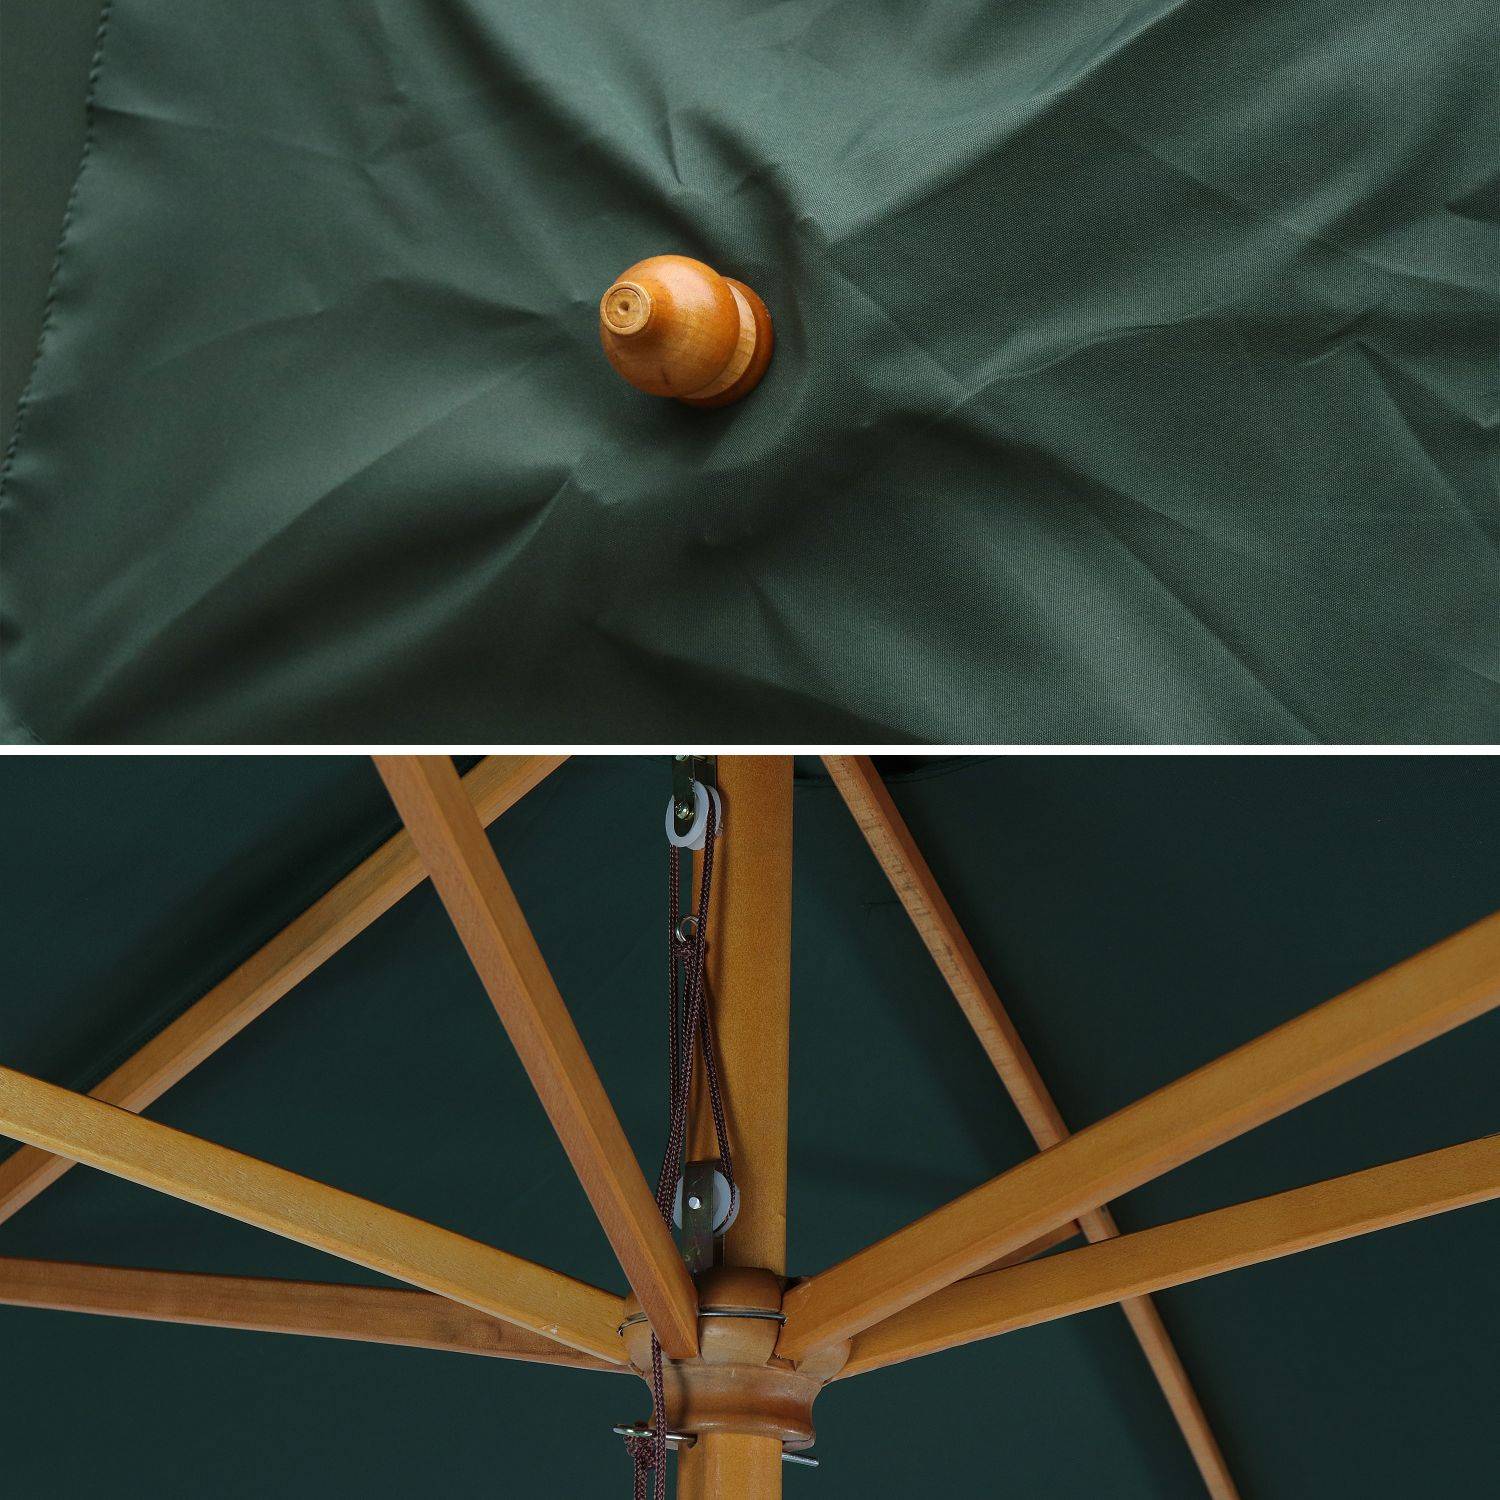 Ombrellone dritto, forma: rotonda, in legno, 3m - modello: Cabourg, colore: Verde bottiglia - palo centrale in legno, Ø300cm, sistema di apertura manuale, puleggia Photo5